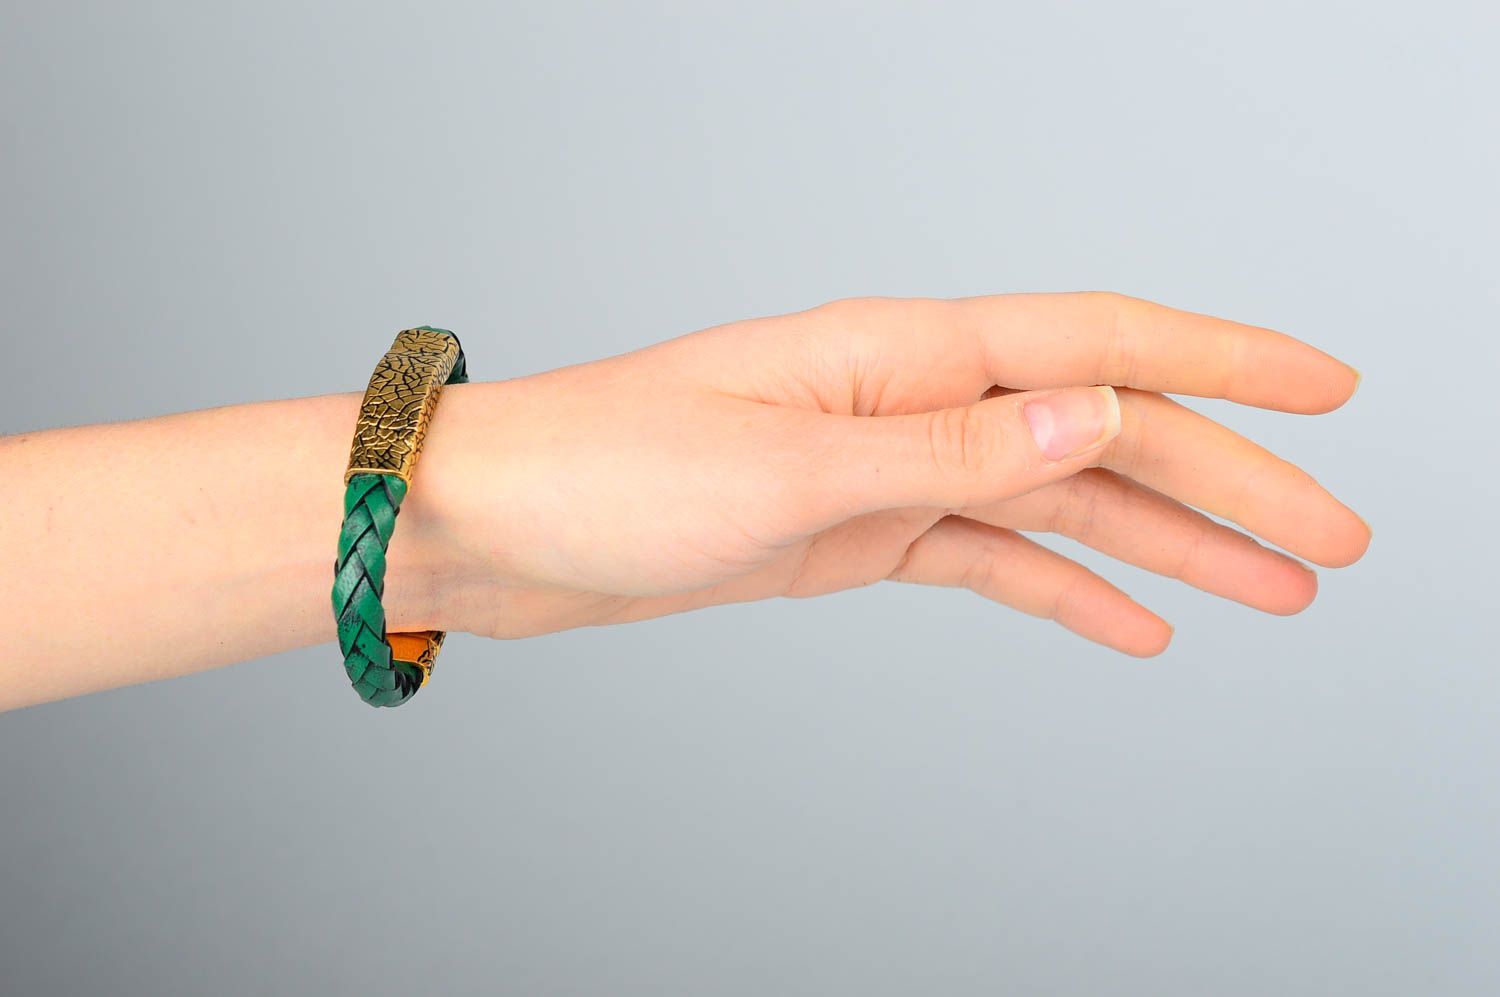 Кожаный браслет хэнд мэйд браслет на руку зеленый женское украшение из кожи фото 2